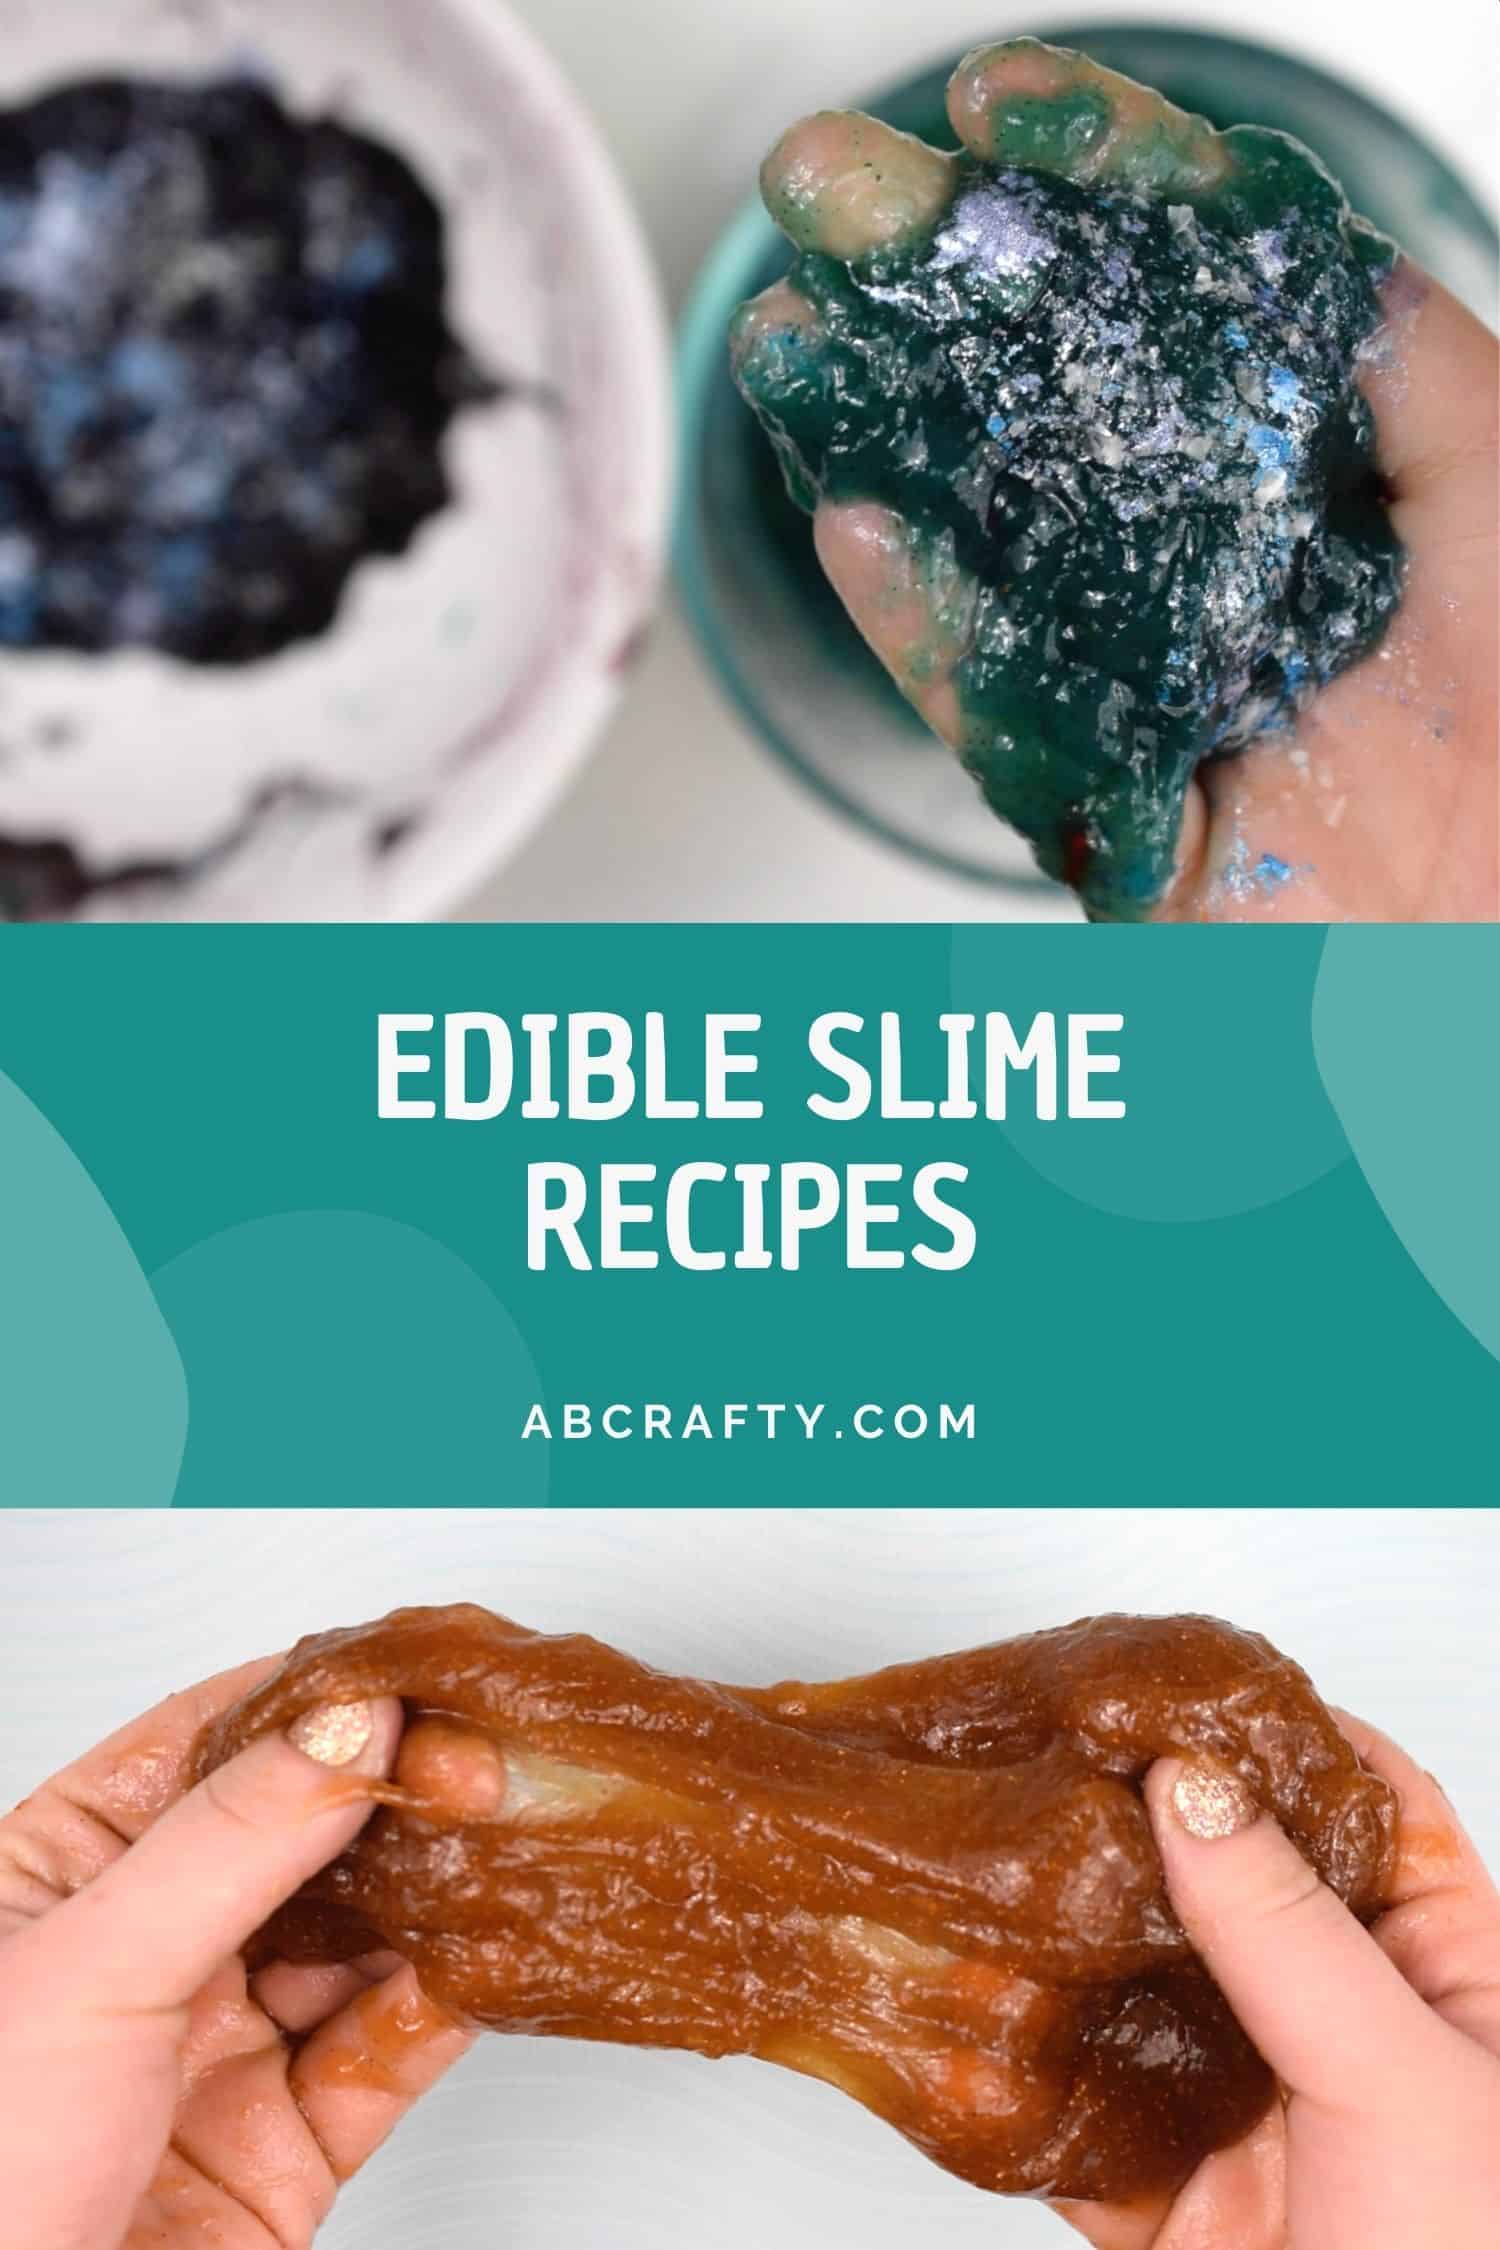 Two Free Homemade Slime Recipes  Homemade slime recipe, Homemade